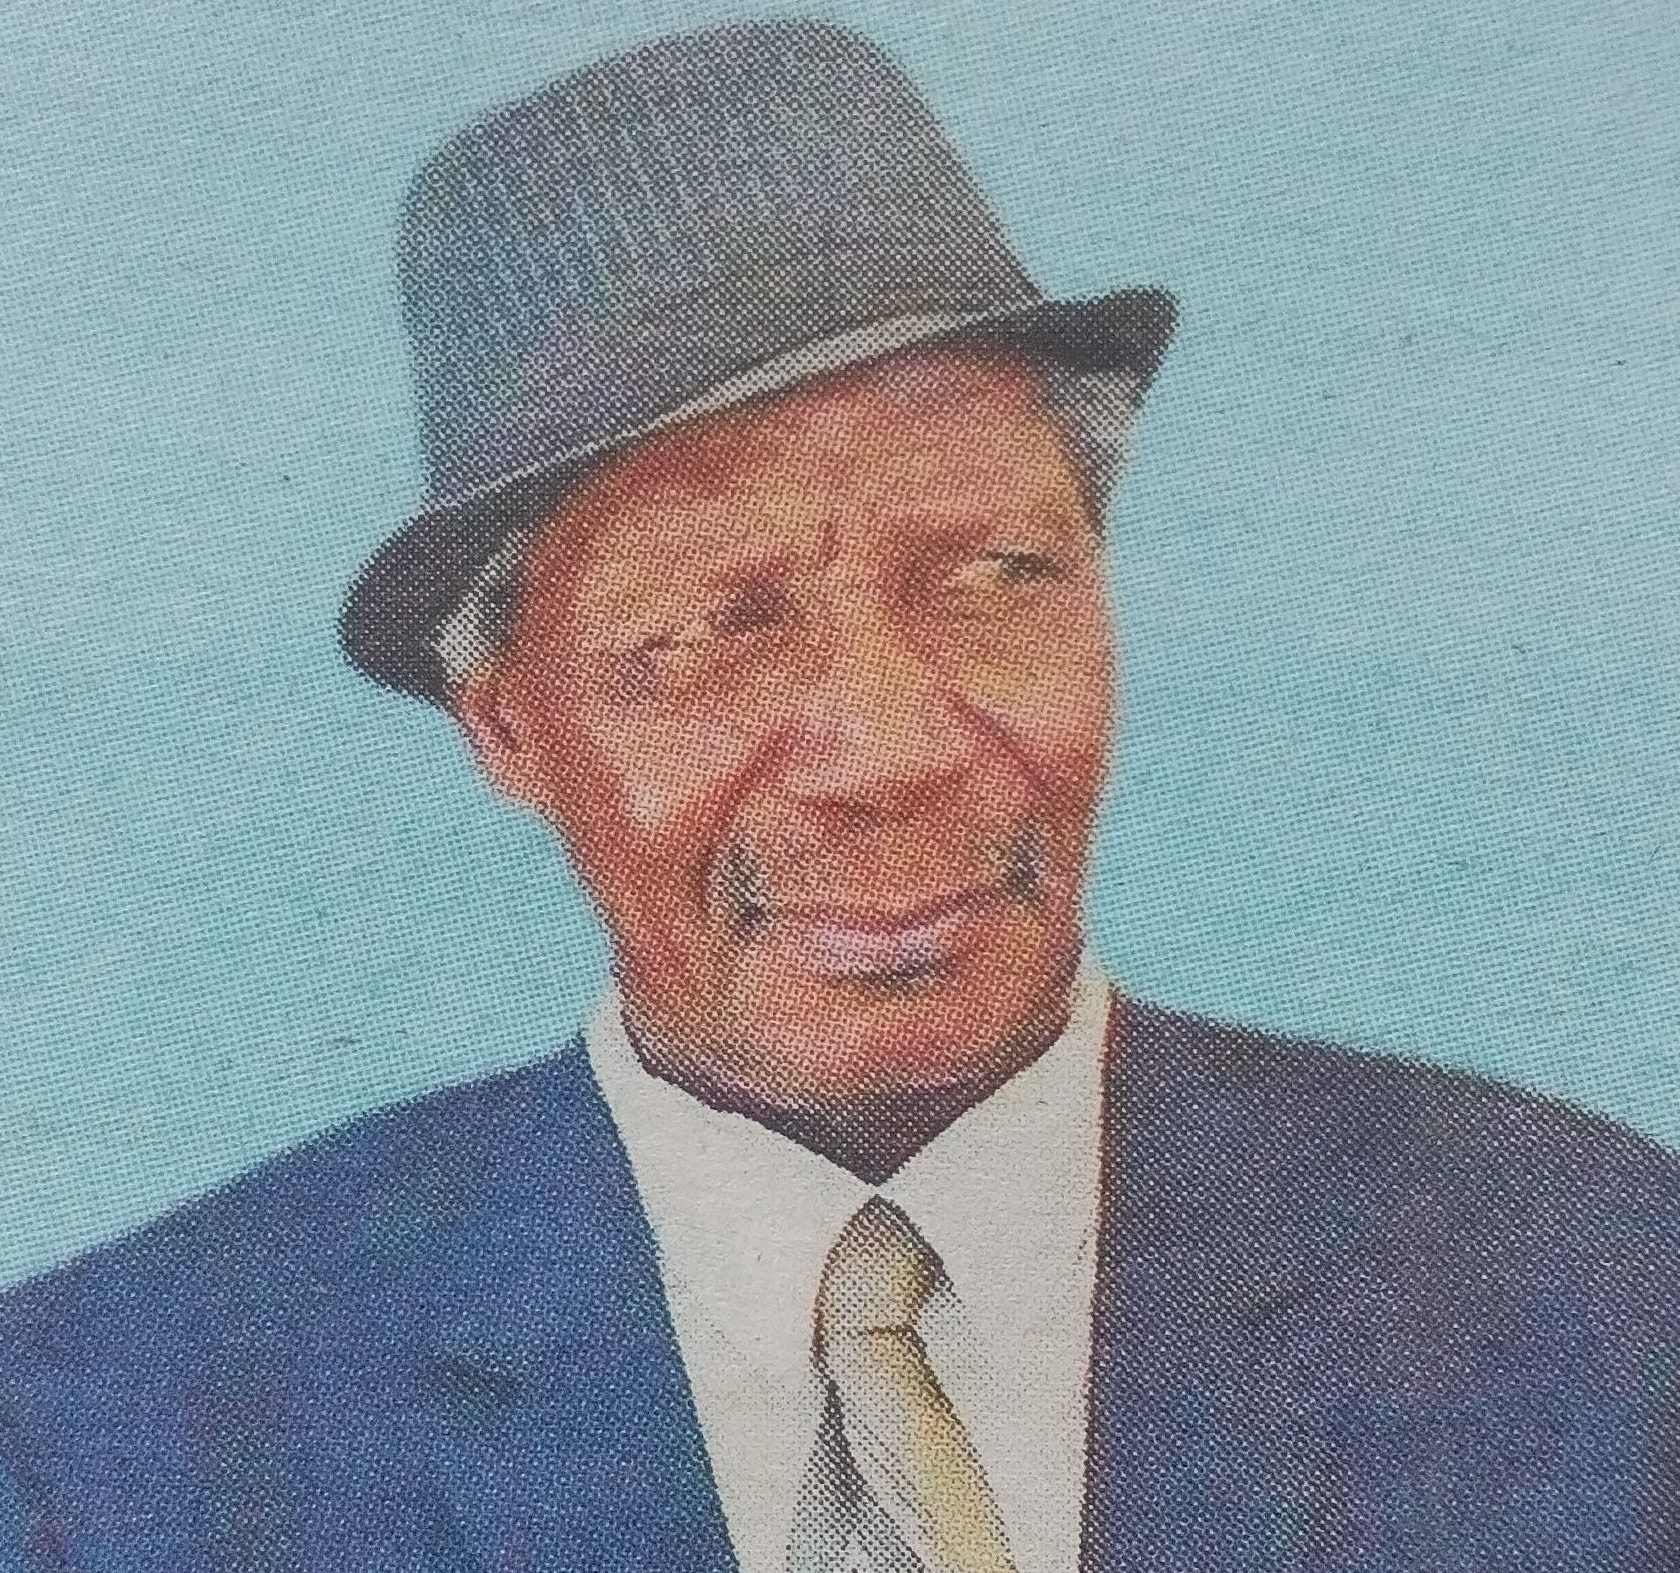 Obituary Image of Johnston Ochwangi Moronge